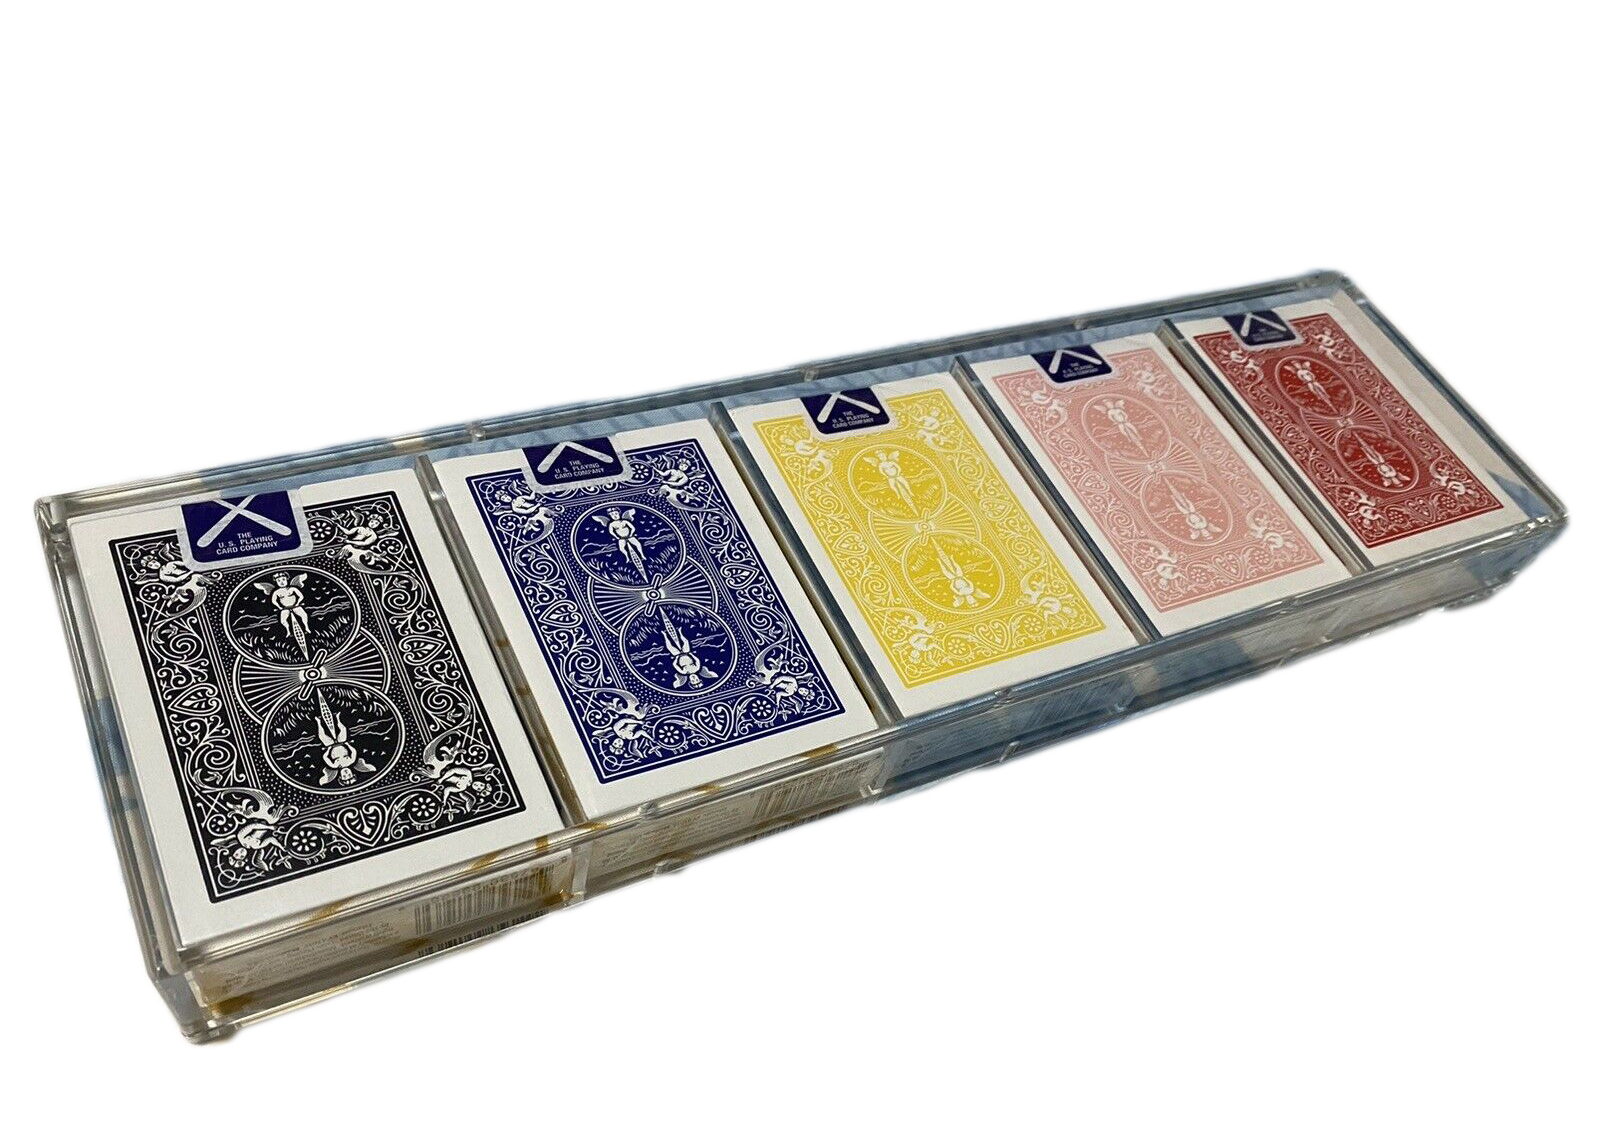 KAWS Original Fake Bicycle Playing Cards - US